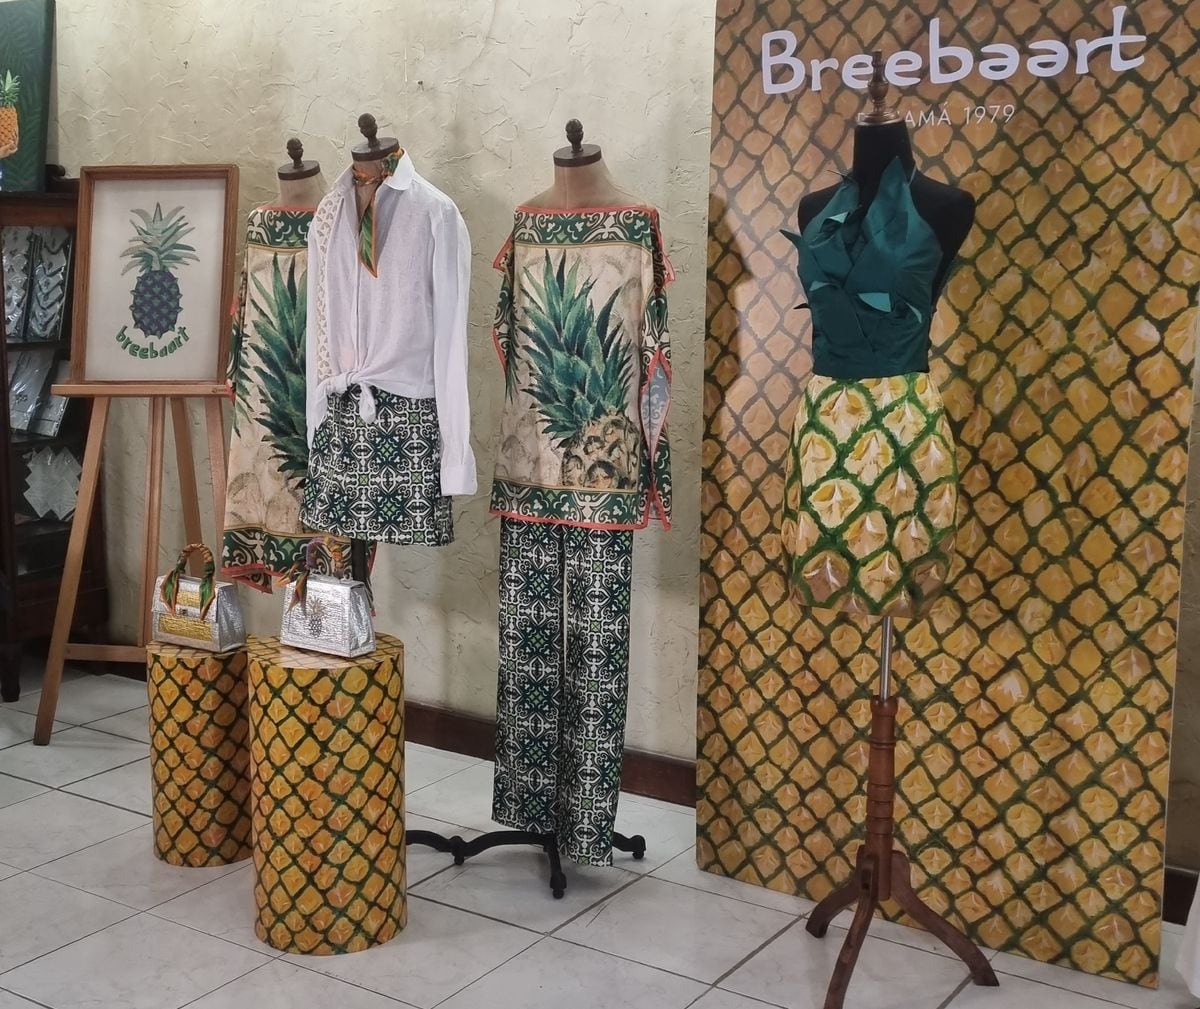 L’Ananas de Panamá, la nueva colección en honor a la diseñadora Hélene Breebaart